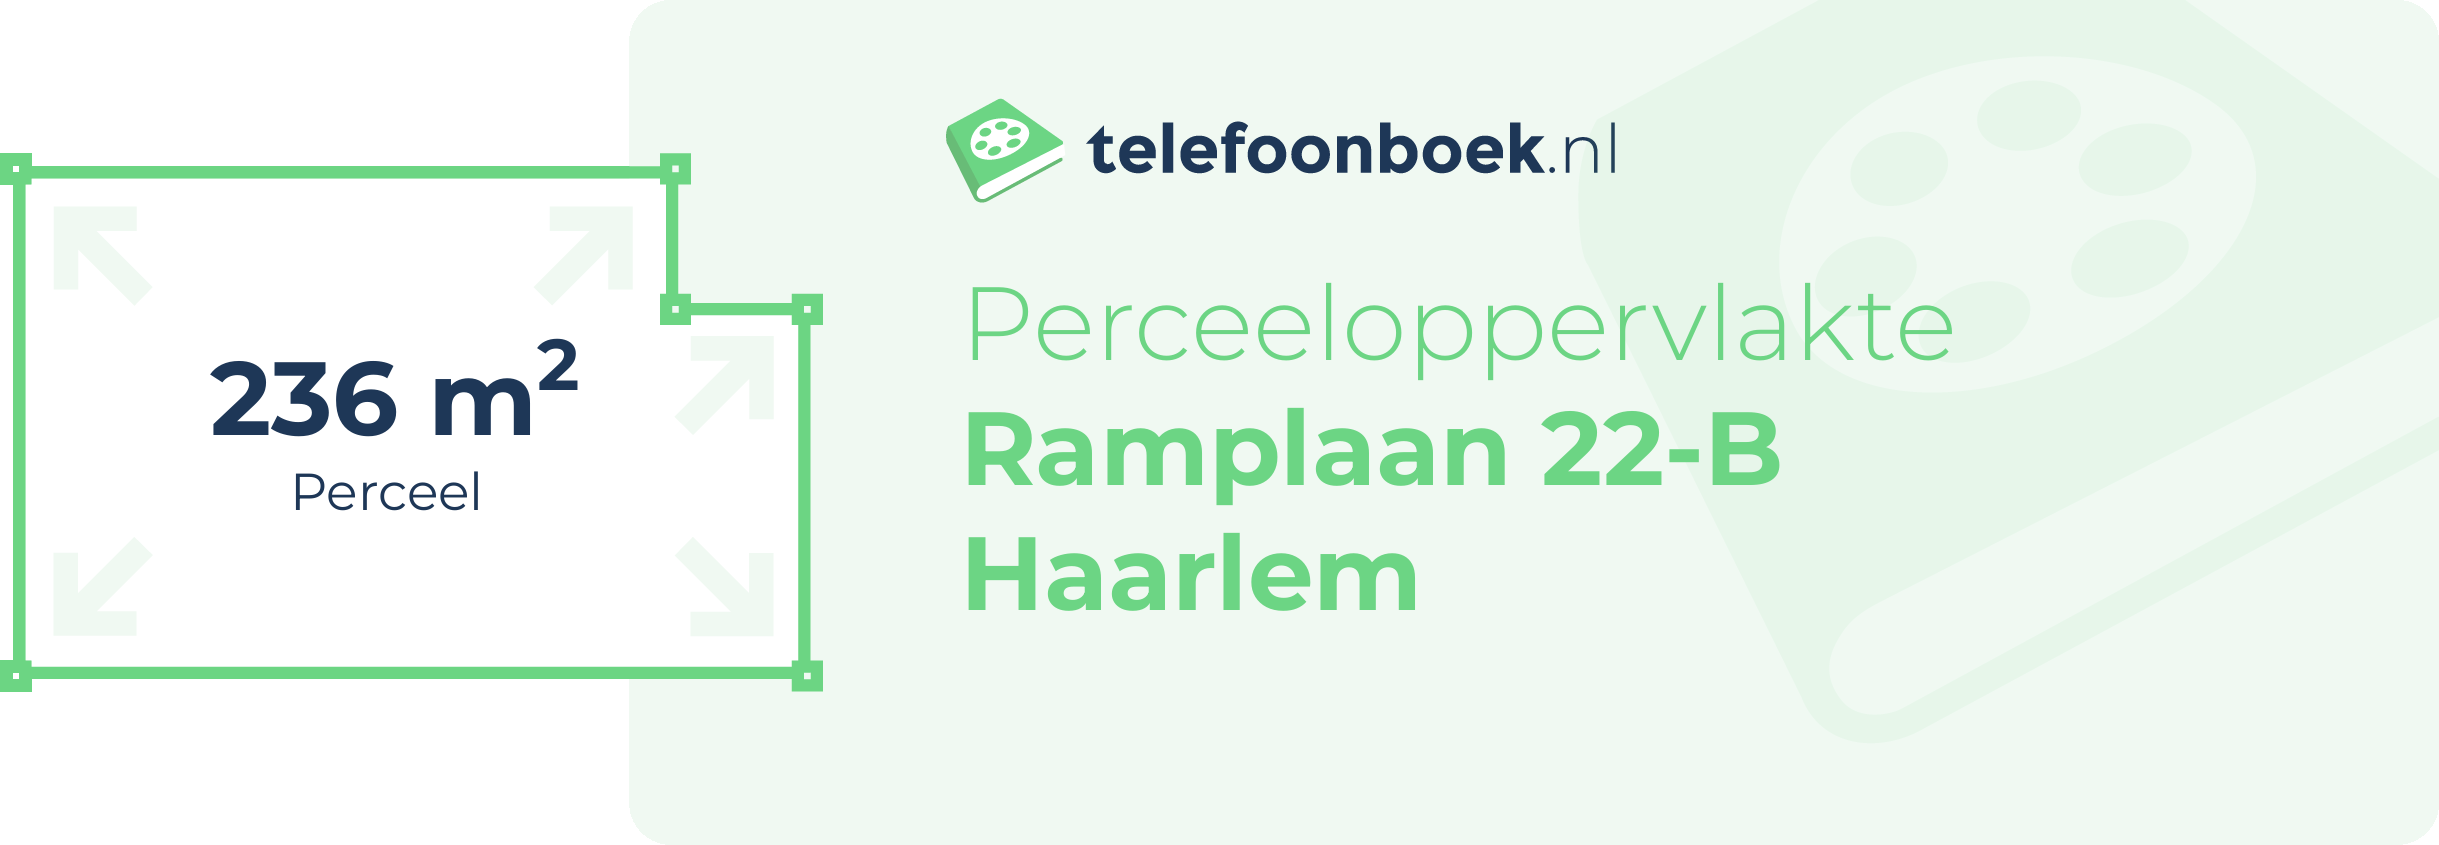 Perceeloppervlakte Ramplaan 22-B Haarlem